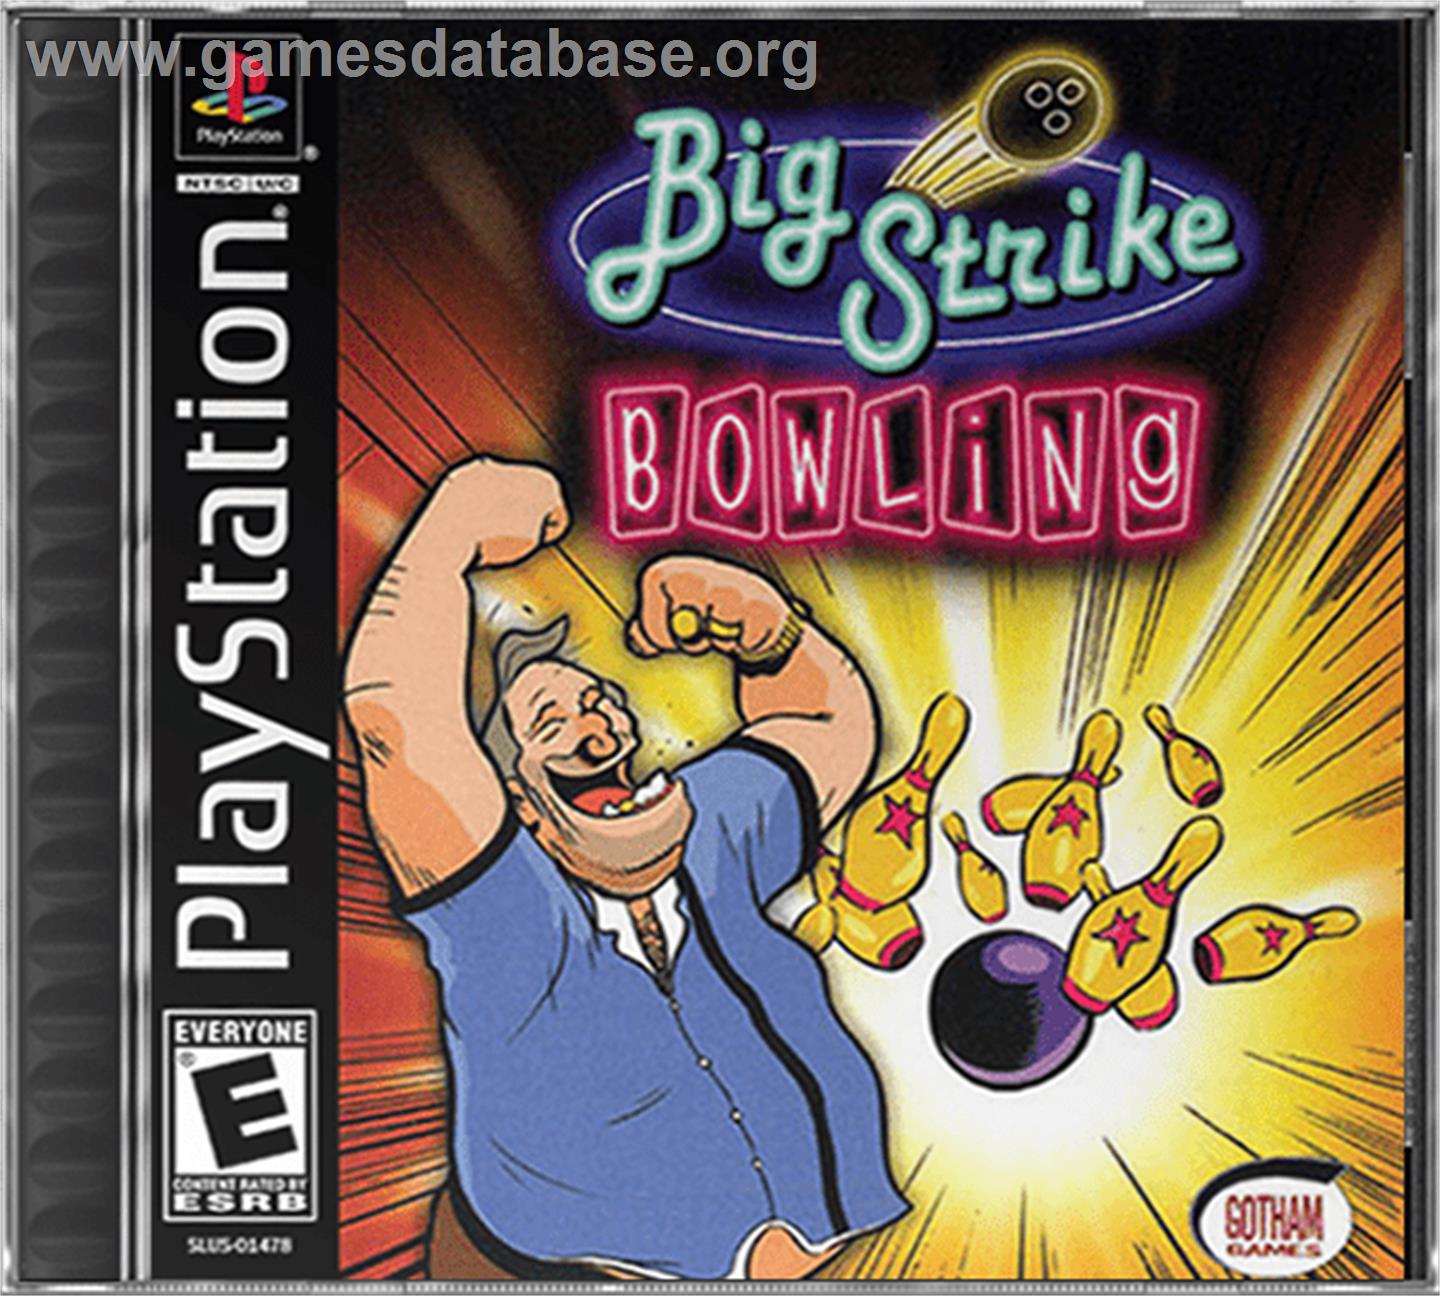 Big Strike Bowling - Sony Playstation - Artwork - Box